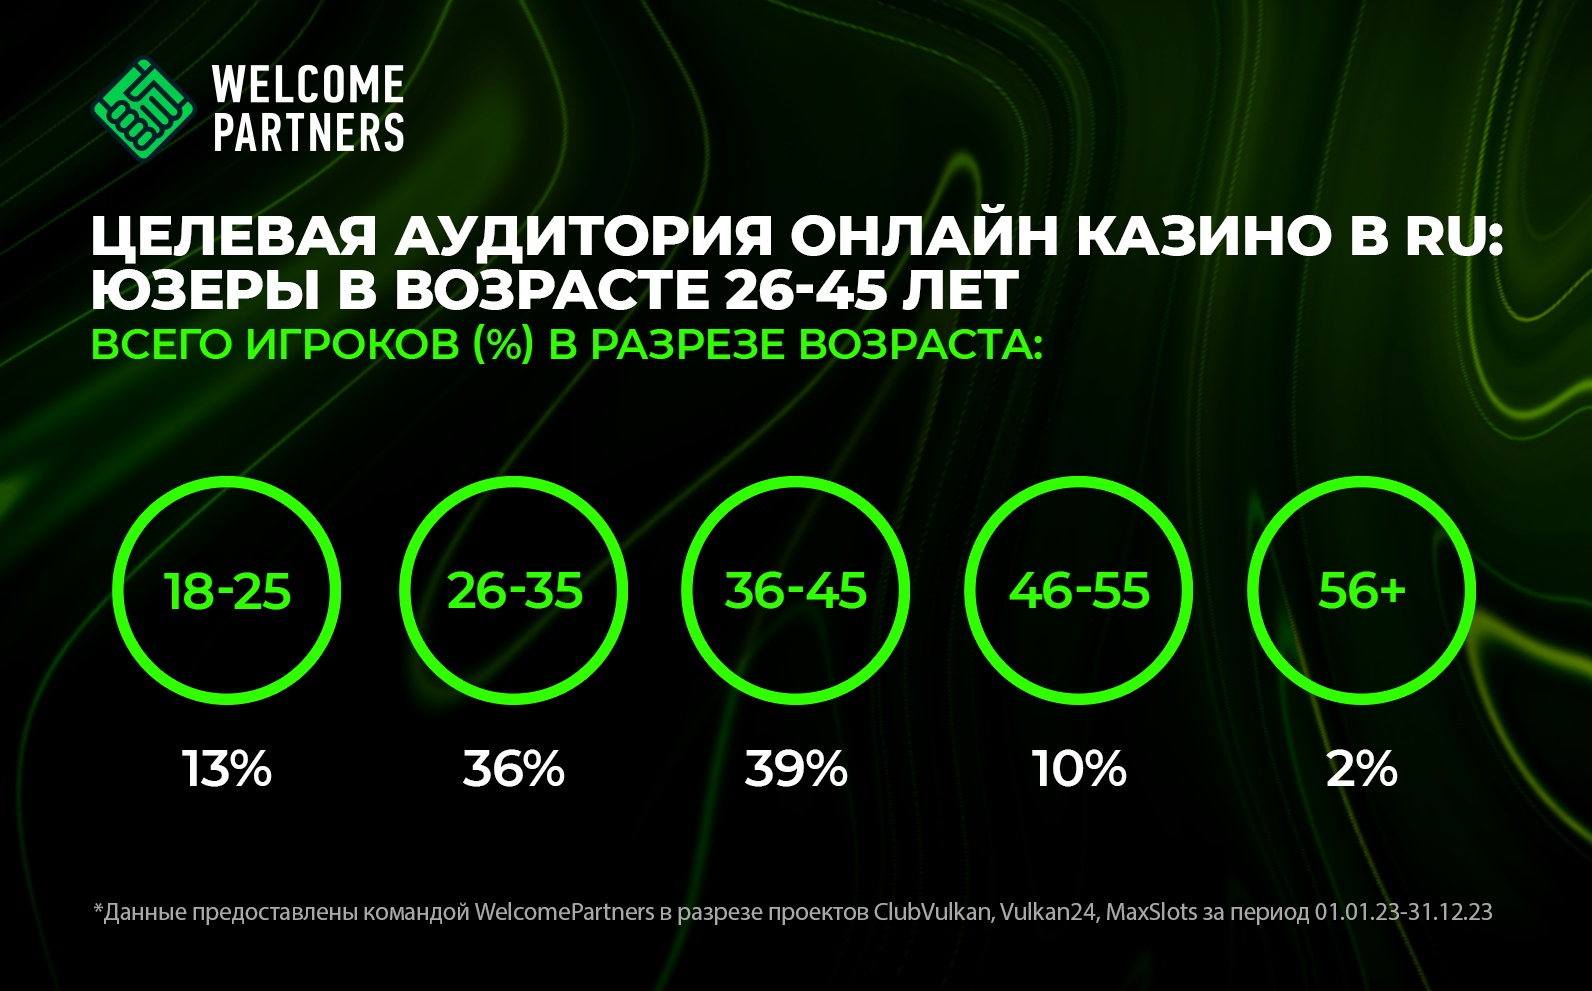 возраст целевой аудитории онлайн казино россия